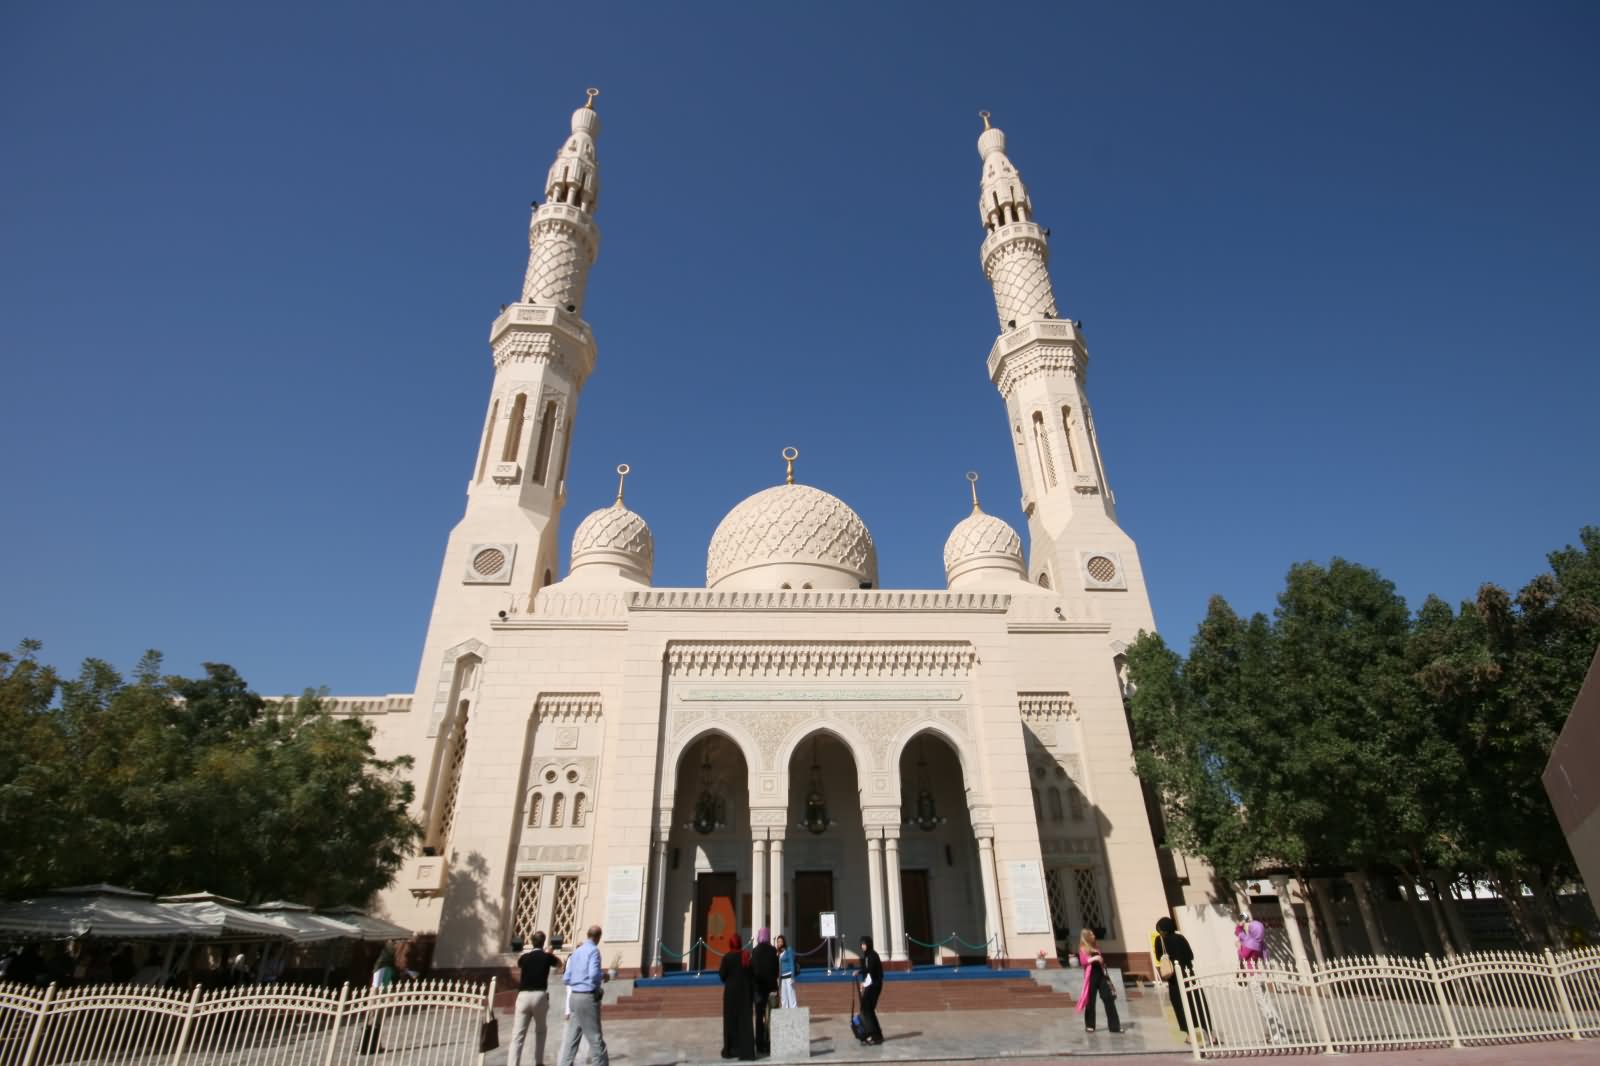 Entrance Of The Jumeirah Mosque